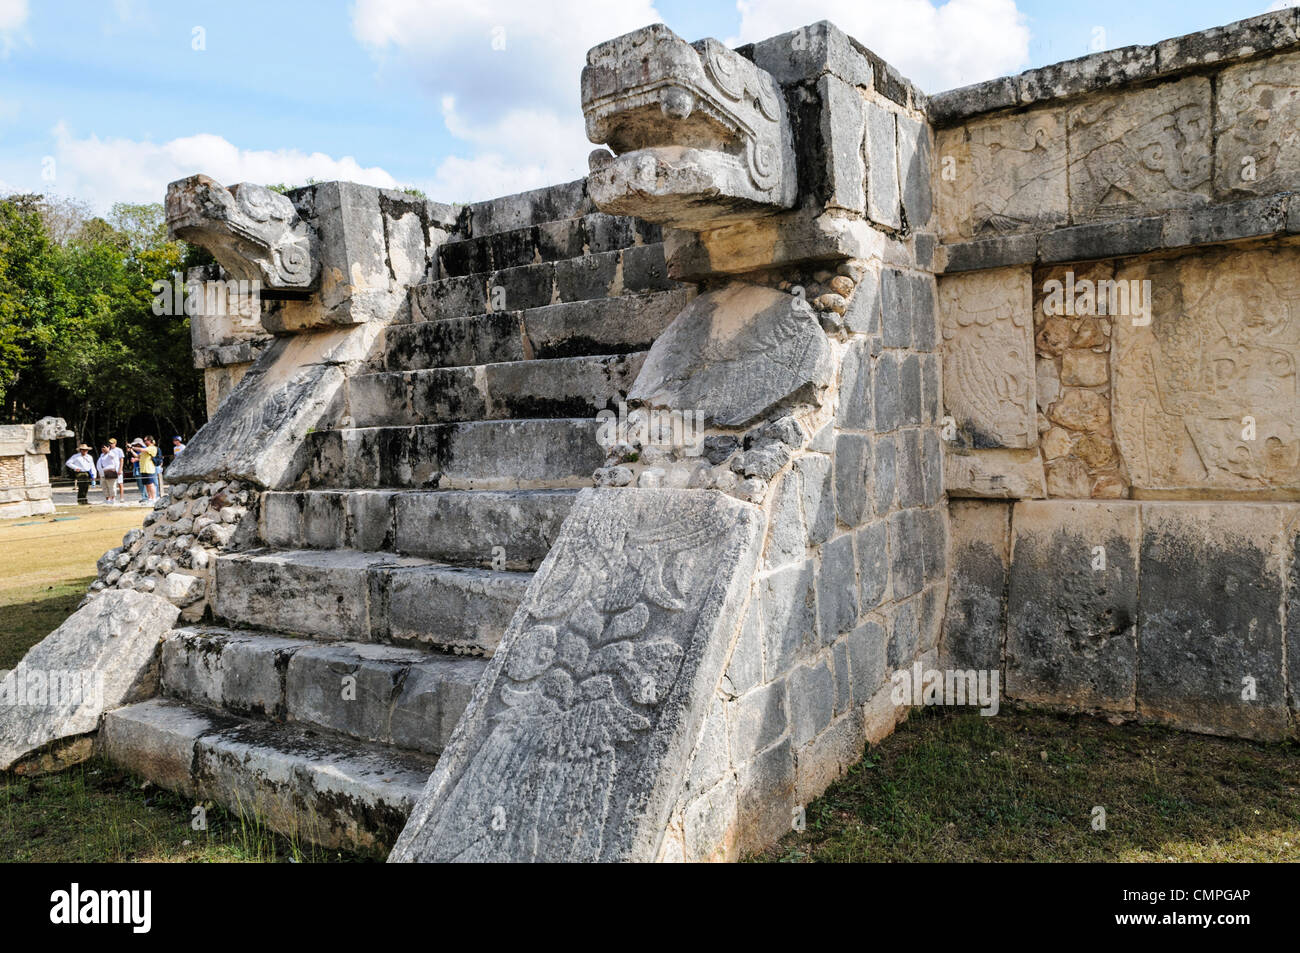 CHICHEN ITZA, Mexique - escaliers en pierre menant au sommet d'une plate-forme de cérémonie, avec des têtes de jaguar sculpté garde l'autre partie, à Chichen Itza Archological Zone, Yucatan, Mexique. Banque D'Images